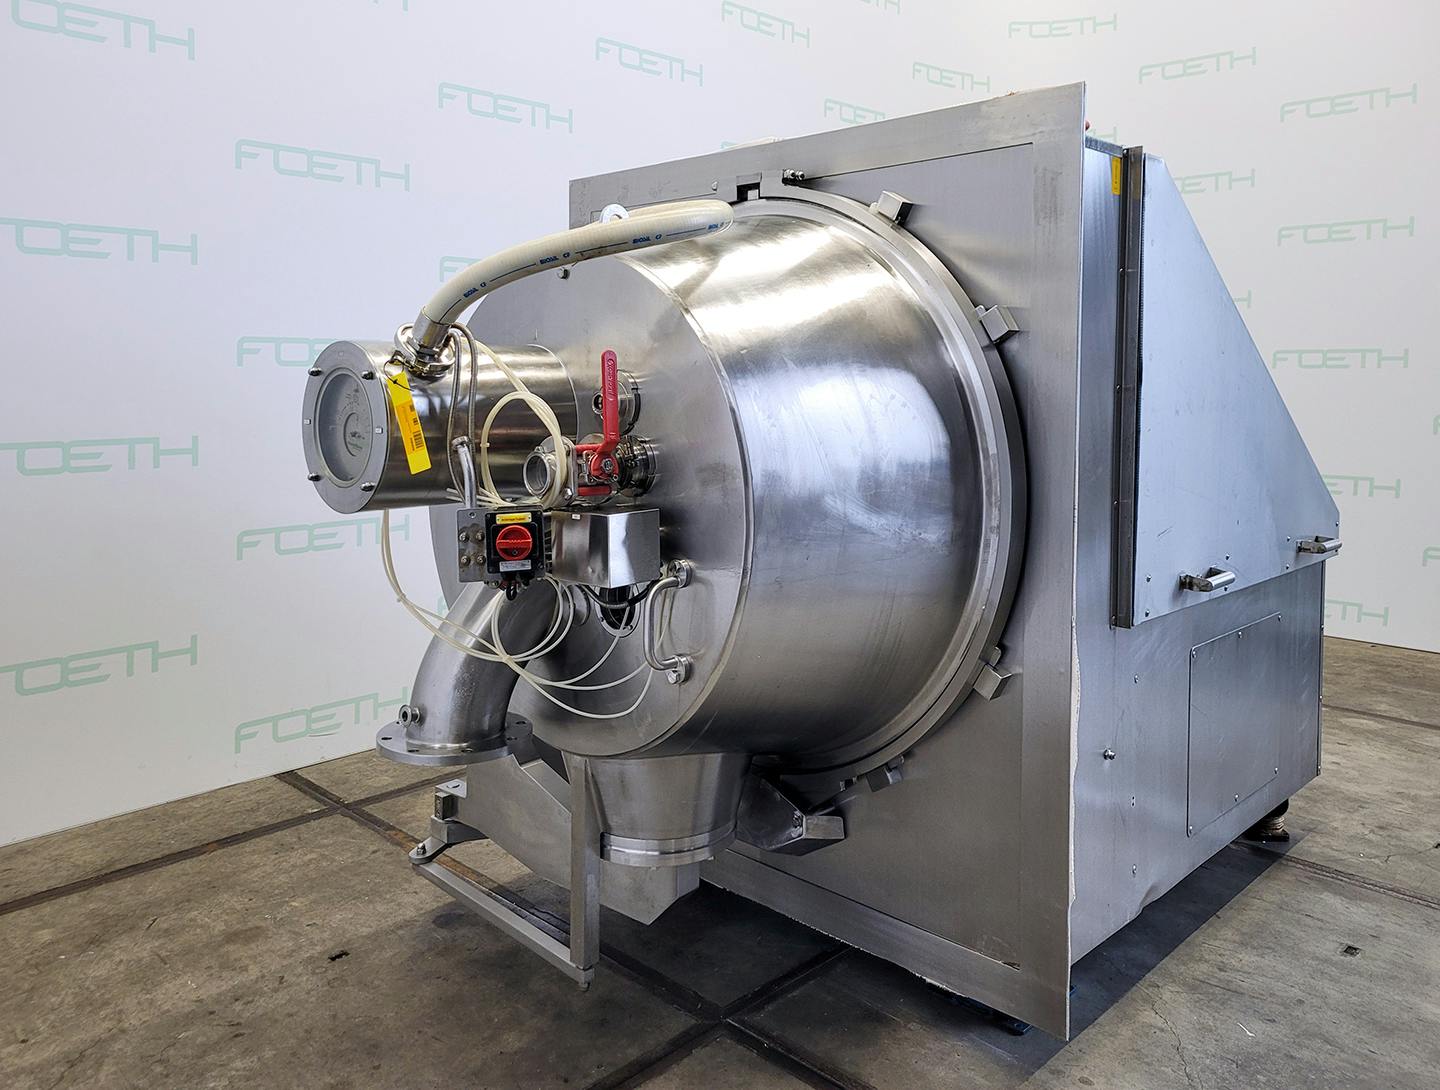 Krauss Maffei HZ 1000 pH - Peeling centrifuge - image 1